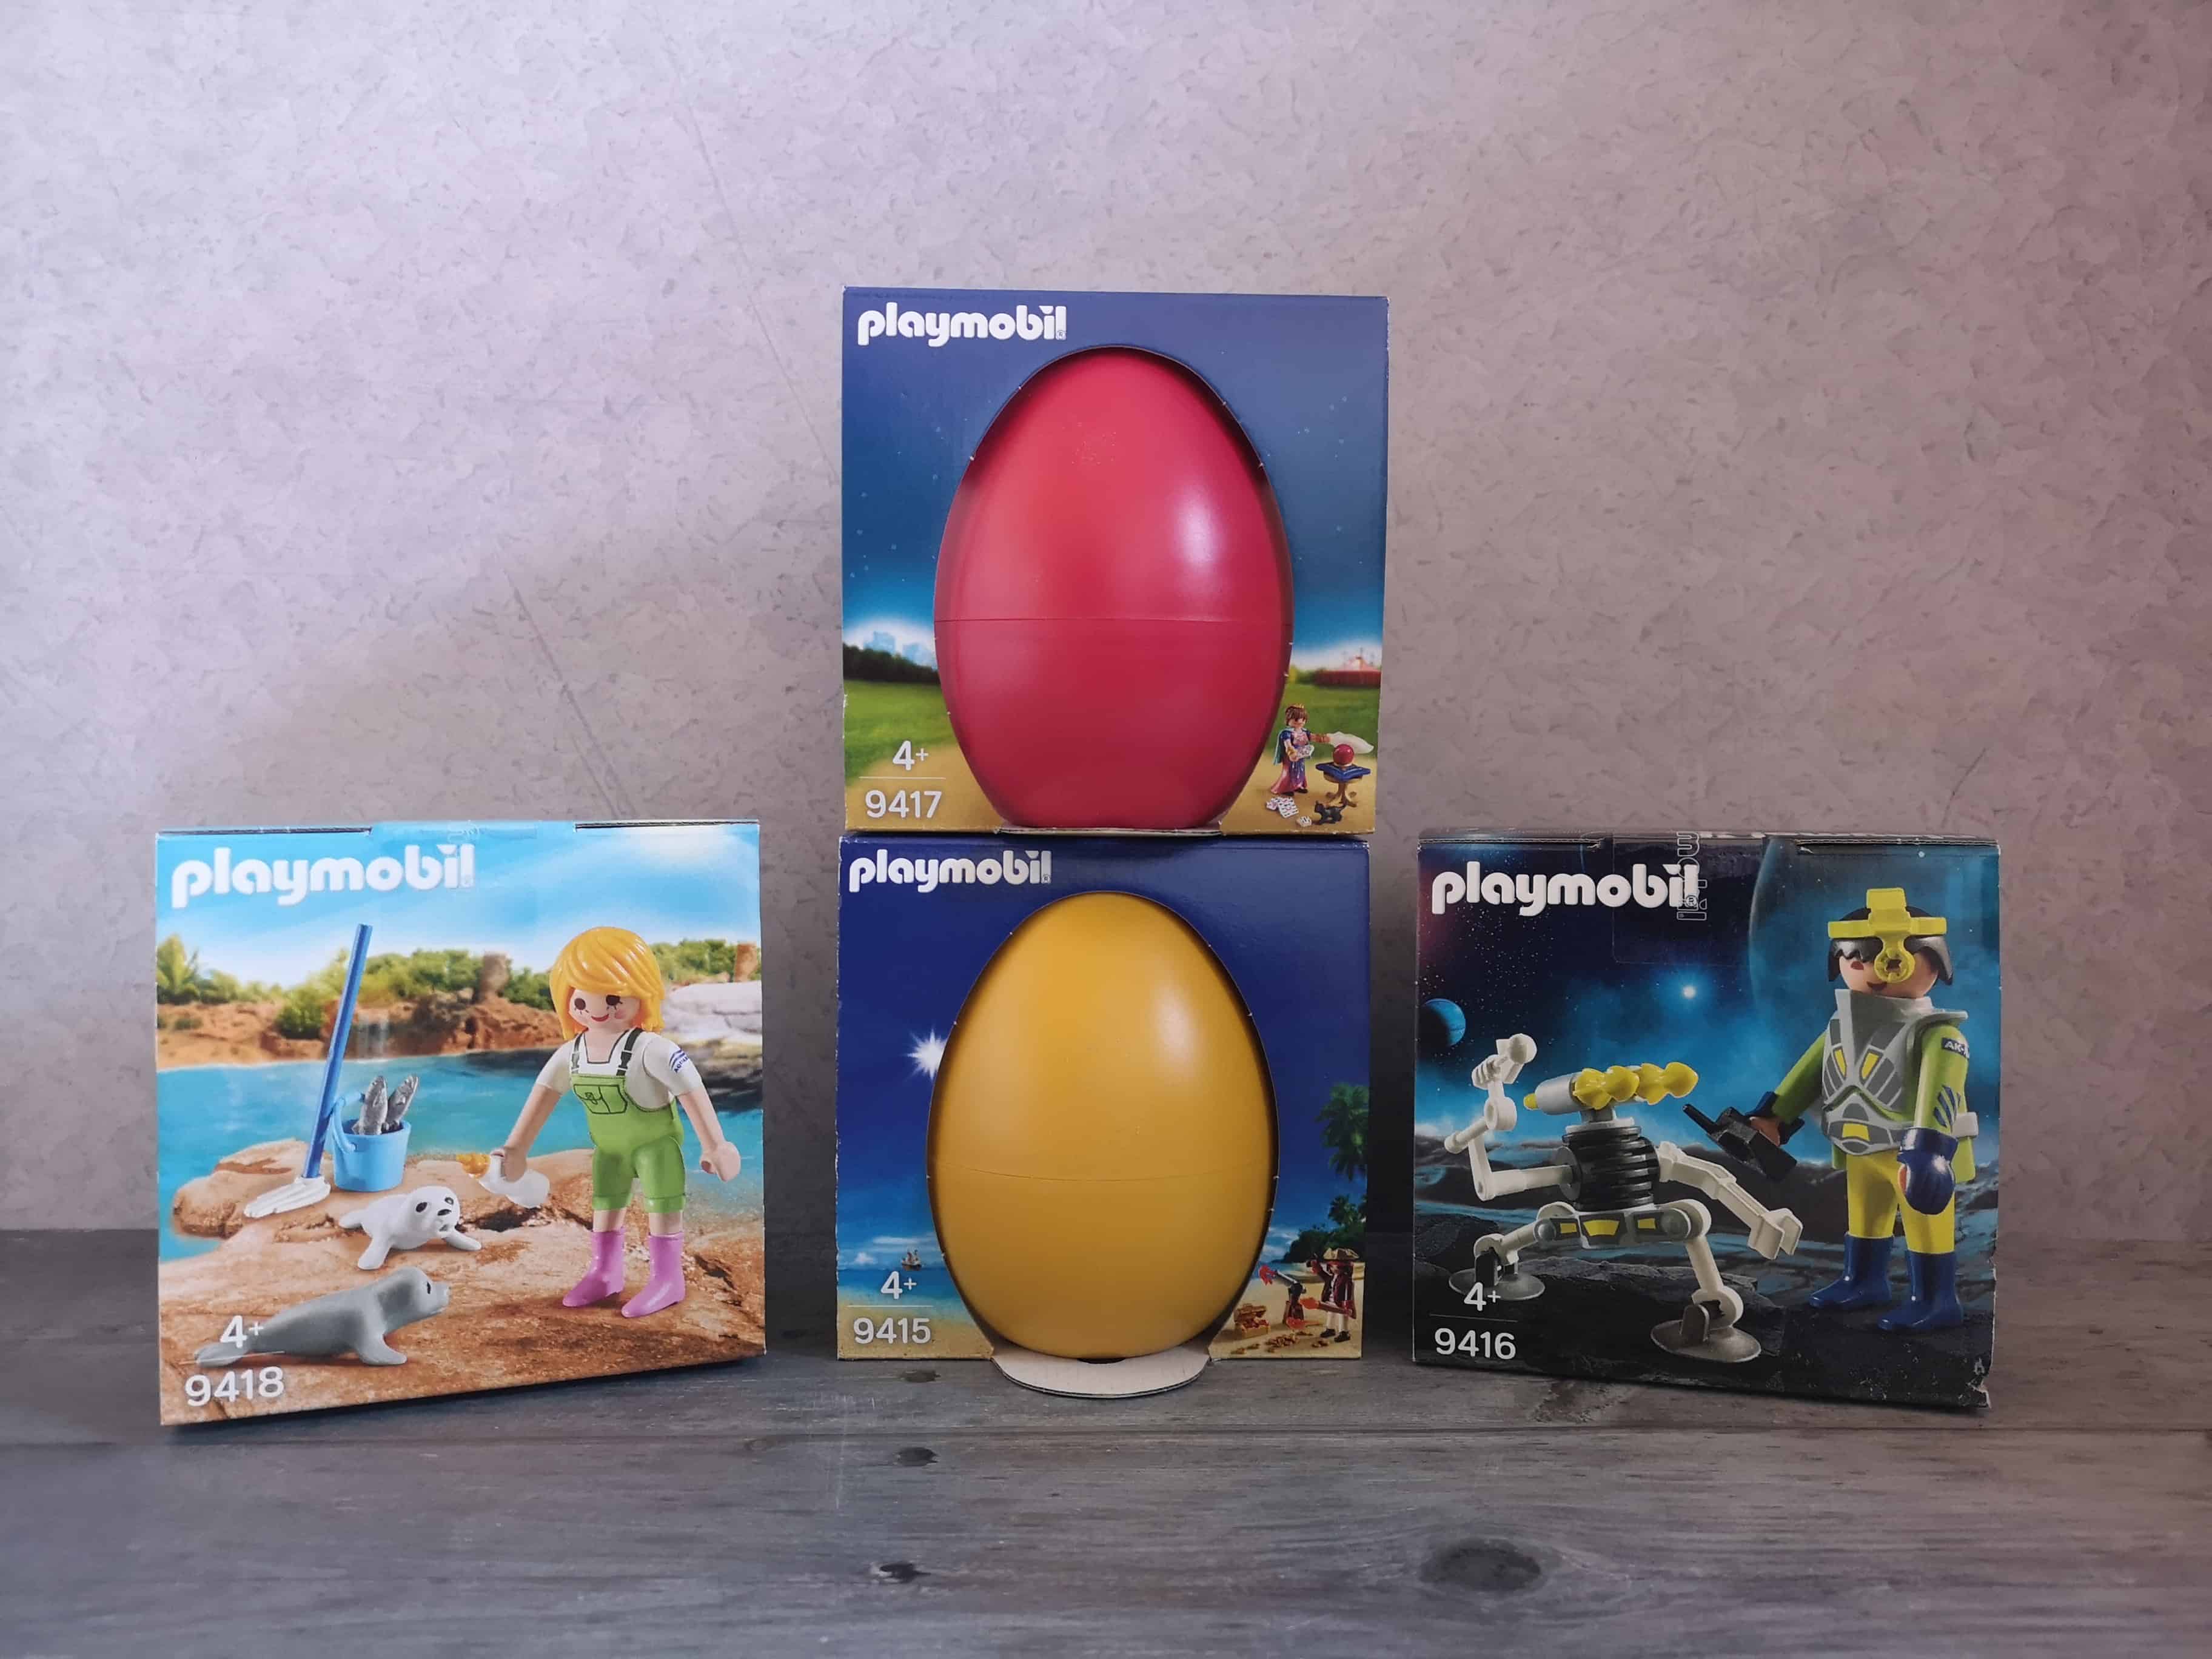 playmobil easter egg 2019